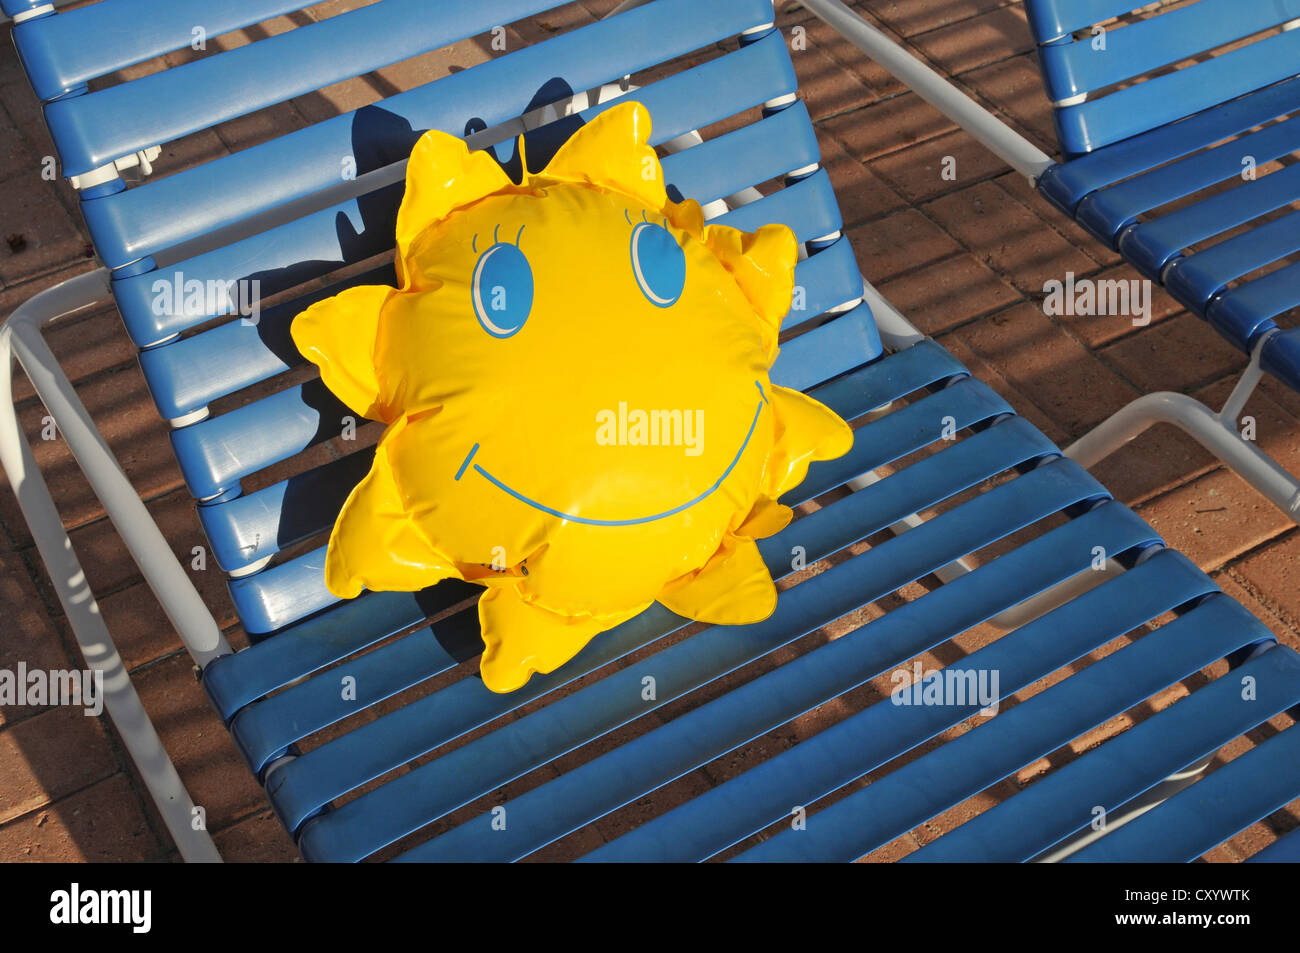 Spielzeug-Sonne auf einer Liege liegend Stockfoto